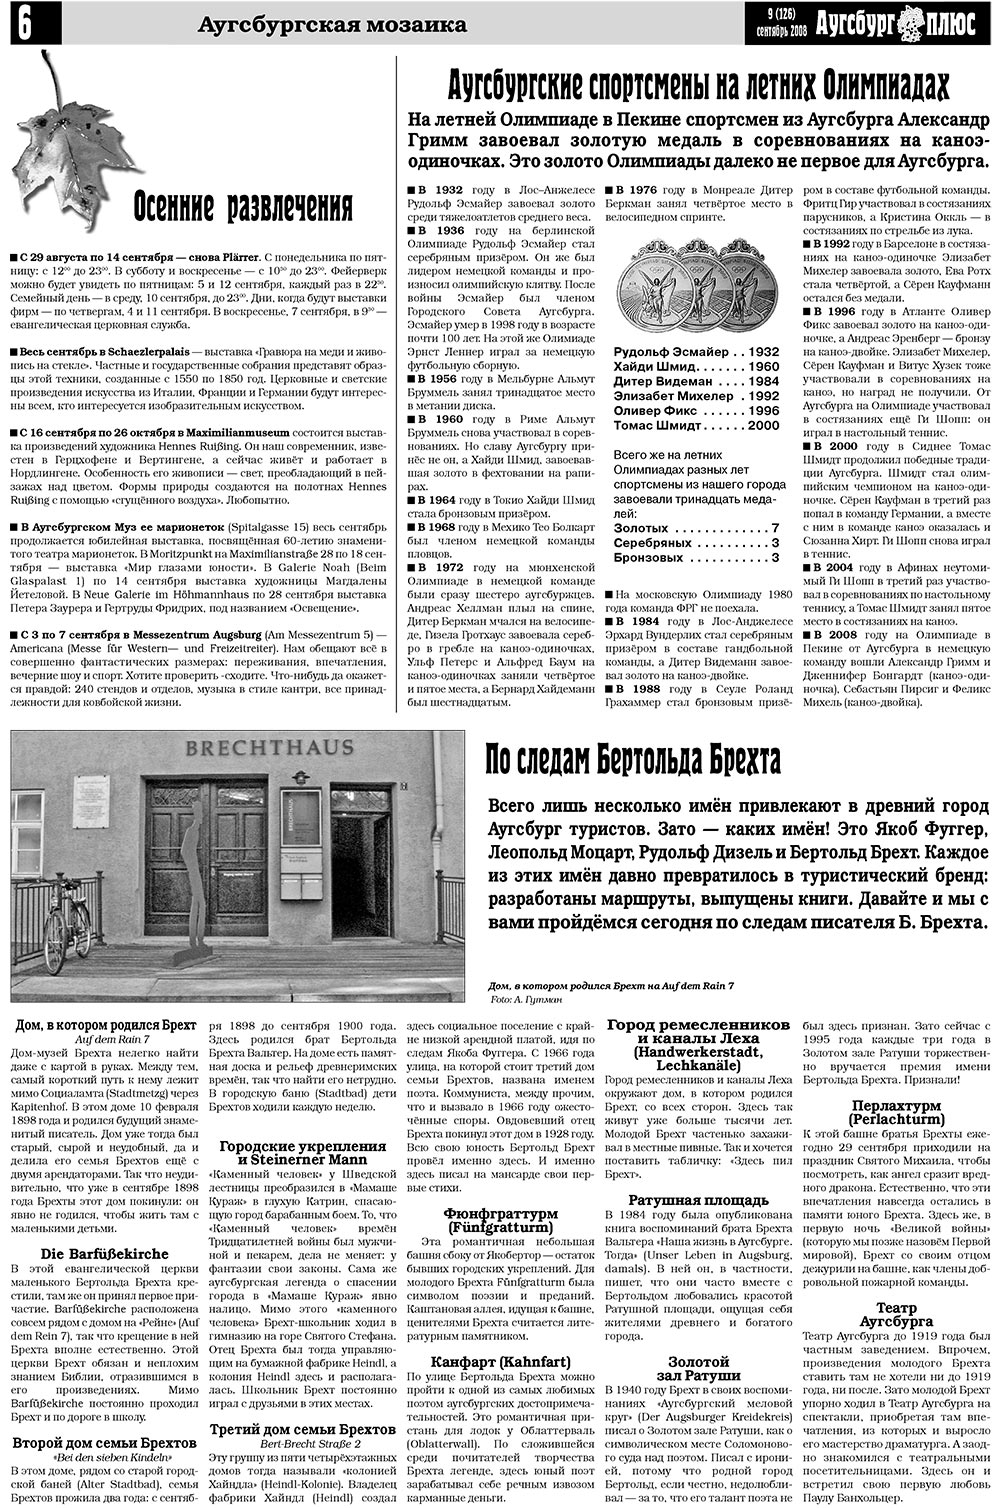 Германия плюс (газета). 2008 год, номер 9, стр. 8